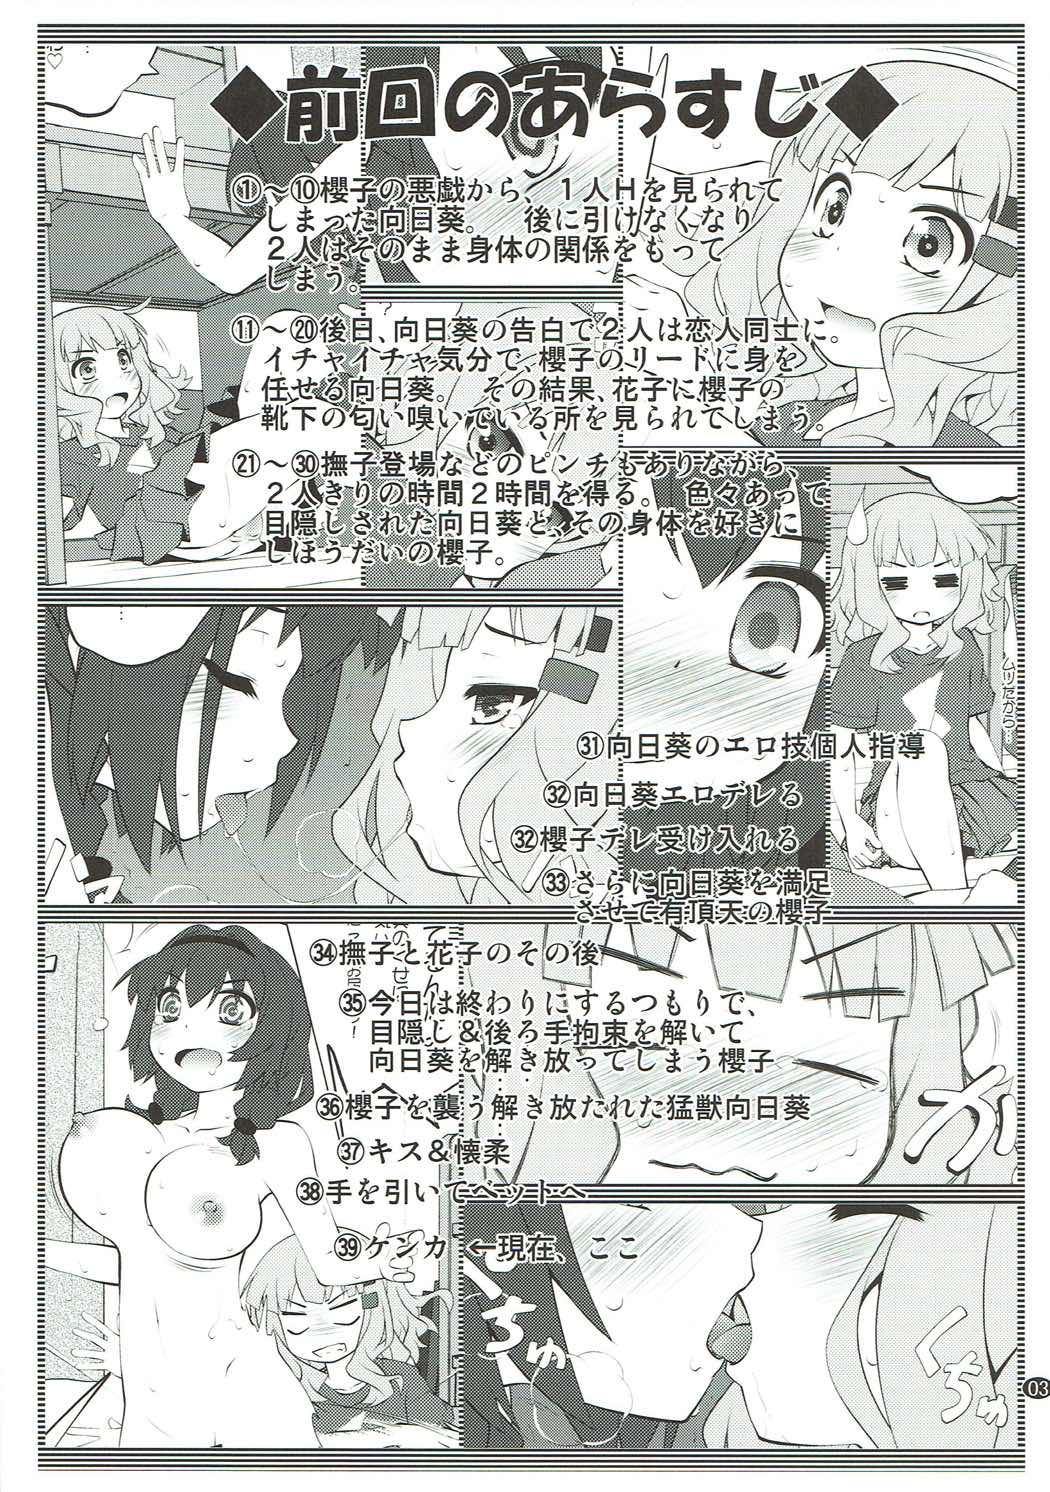 Gaybukkake Himegoto Flowers 12 - Yuruyuri People Having Sex - Page 2